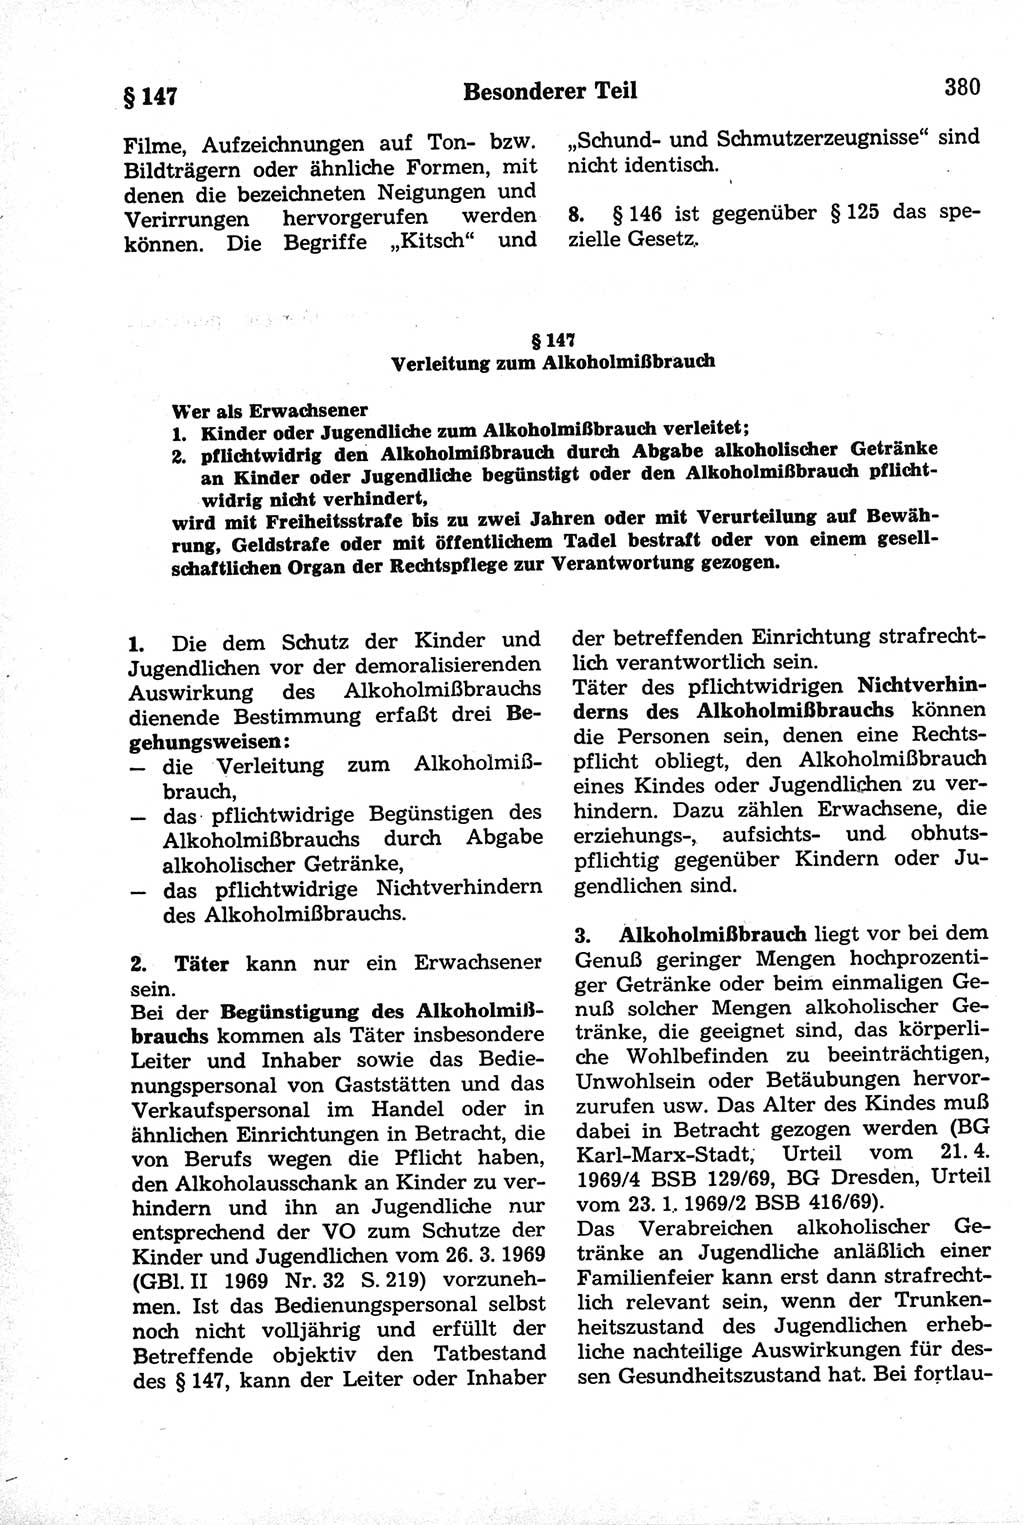 Strafrecht der Deutschen Demokratischen Republik (DDR), Kommentar zum Strafgesetzbuch (StGB) 1981, Seite 380 (Strafr. DDR Komm. StGB 1981, S. 380)